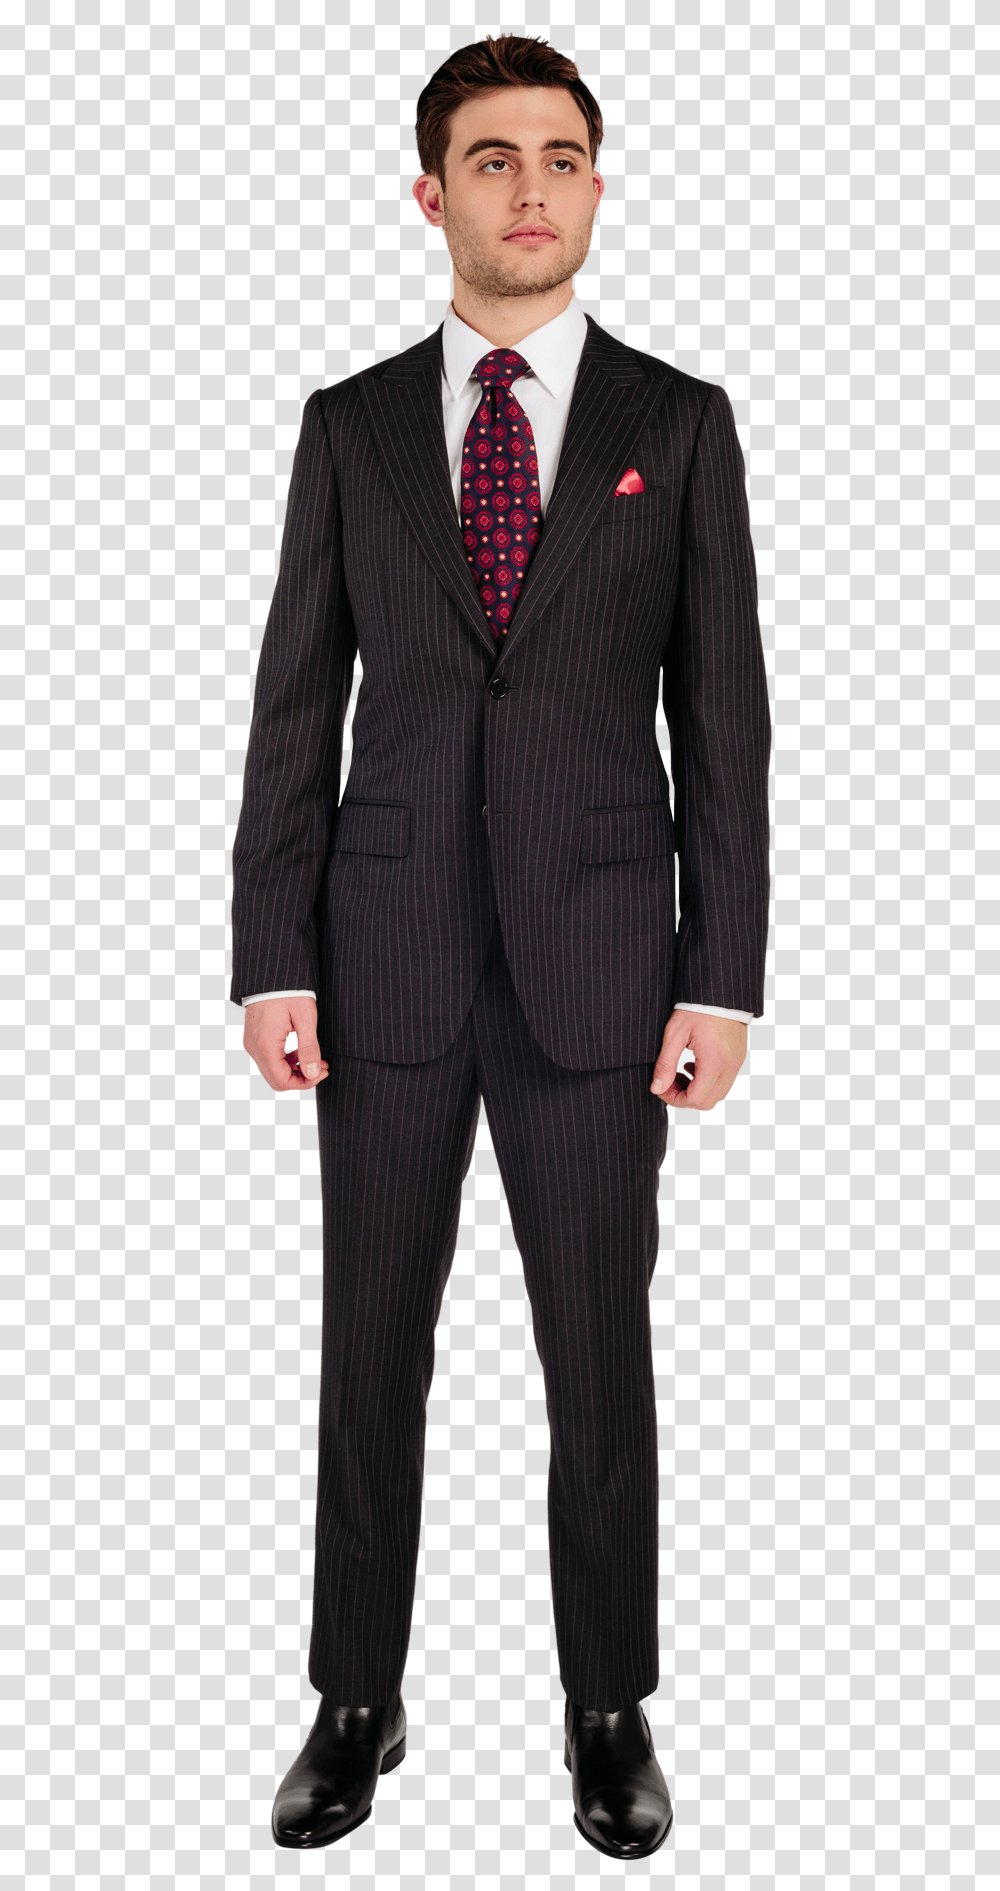 Businessman, Suit, Overcoat, Tie Transparent Png